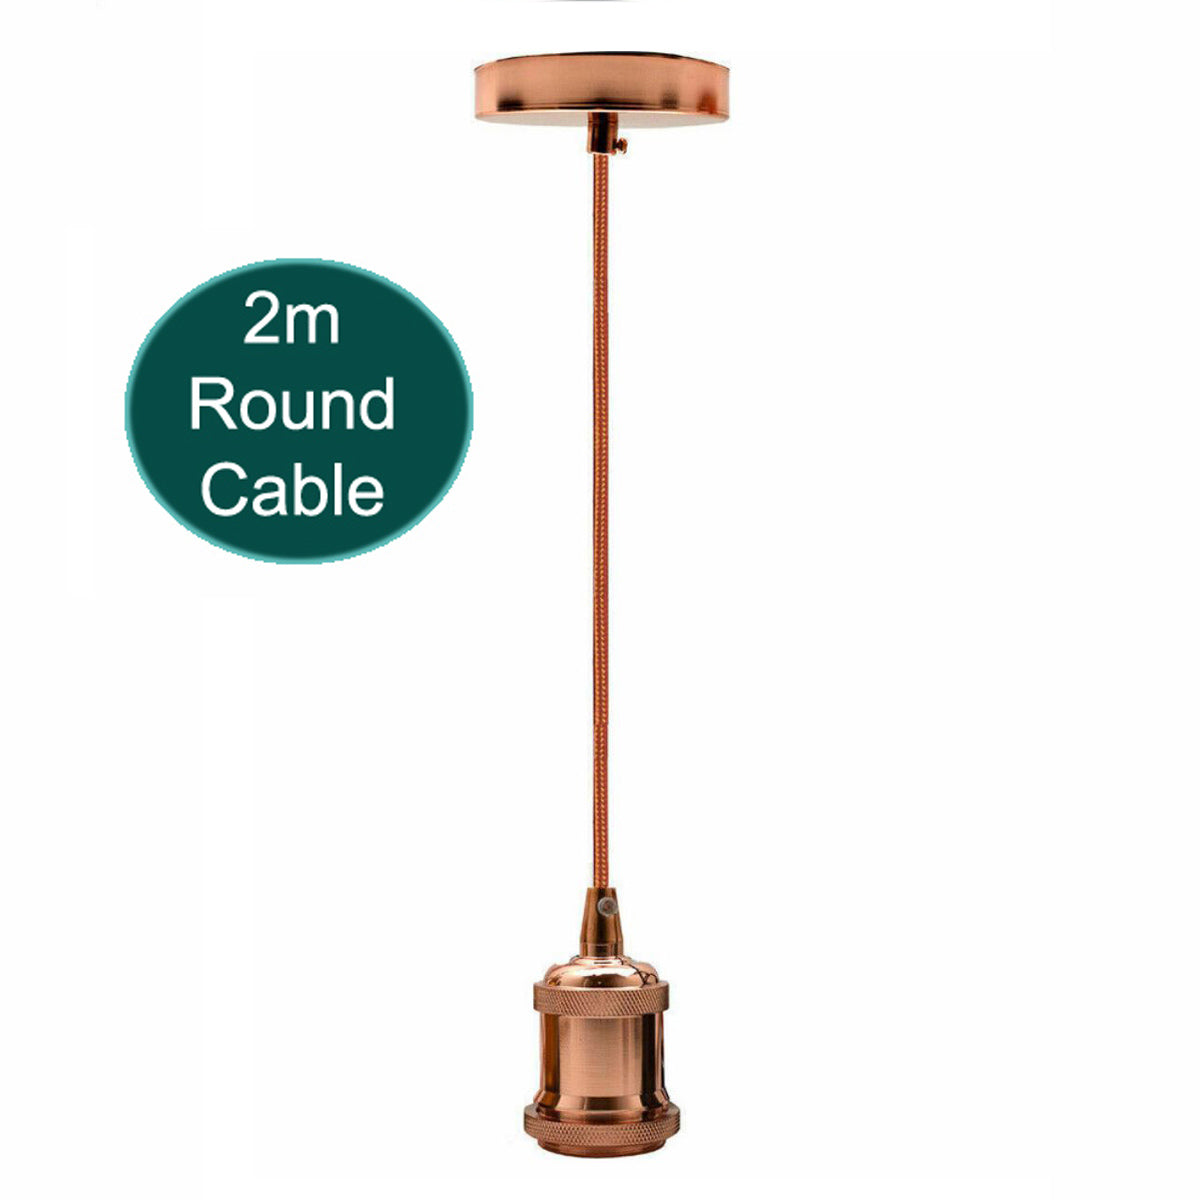 2m Round Cable E27 Base Rose Gold Holder~1722 - LEDSone UK Ltd